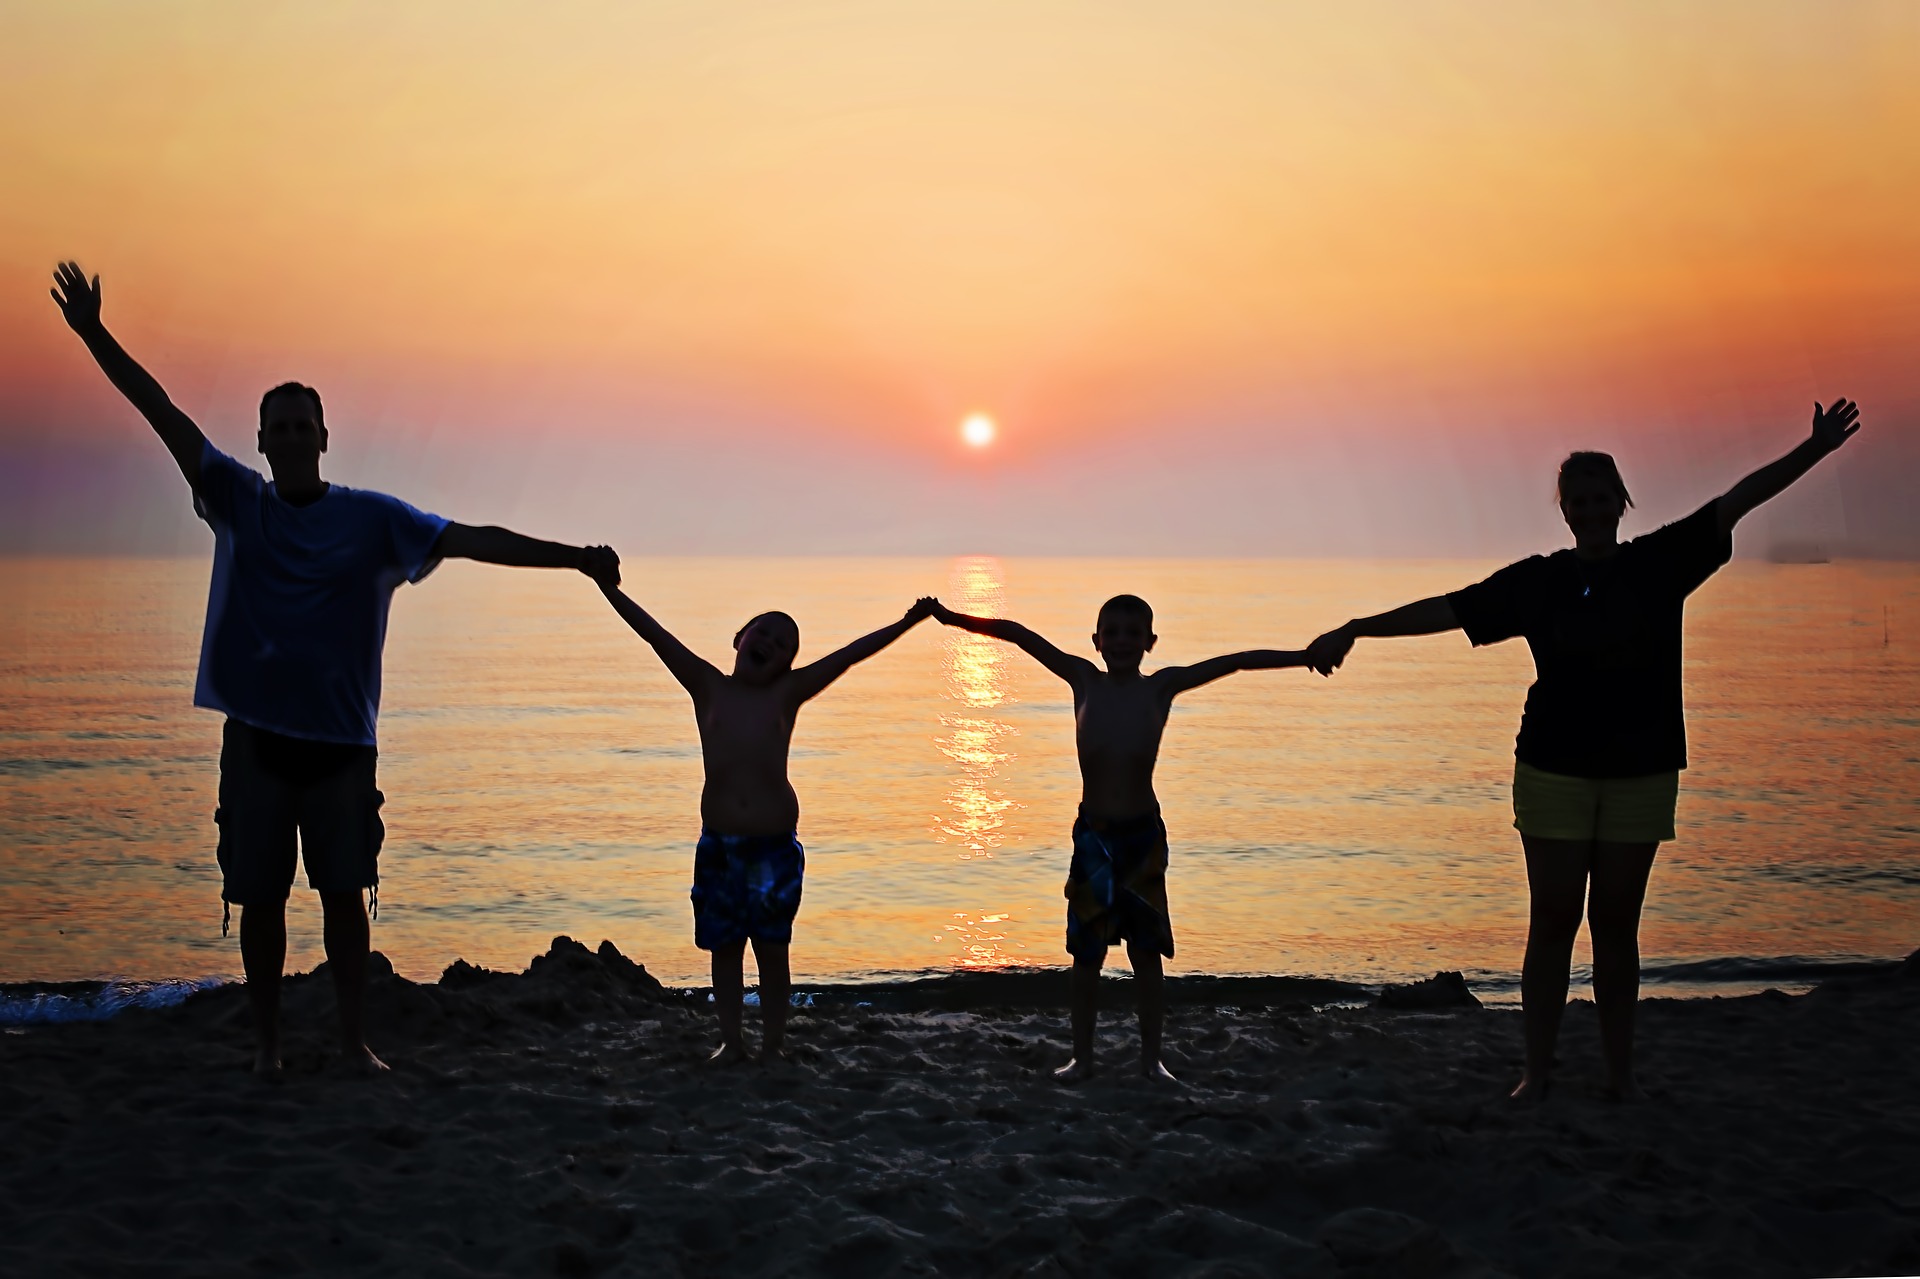 לקראת יום המשפחה- 4 כללים ליצירת חבורה צוהלת אוהבת ושמחה